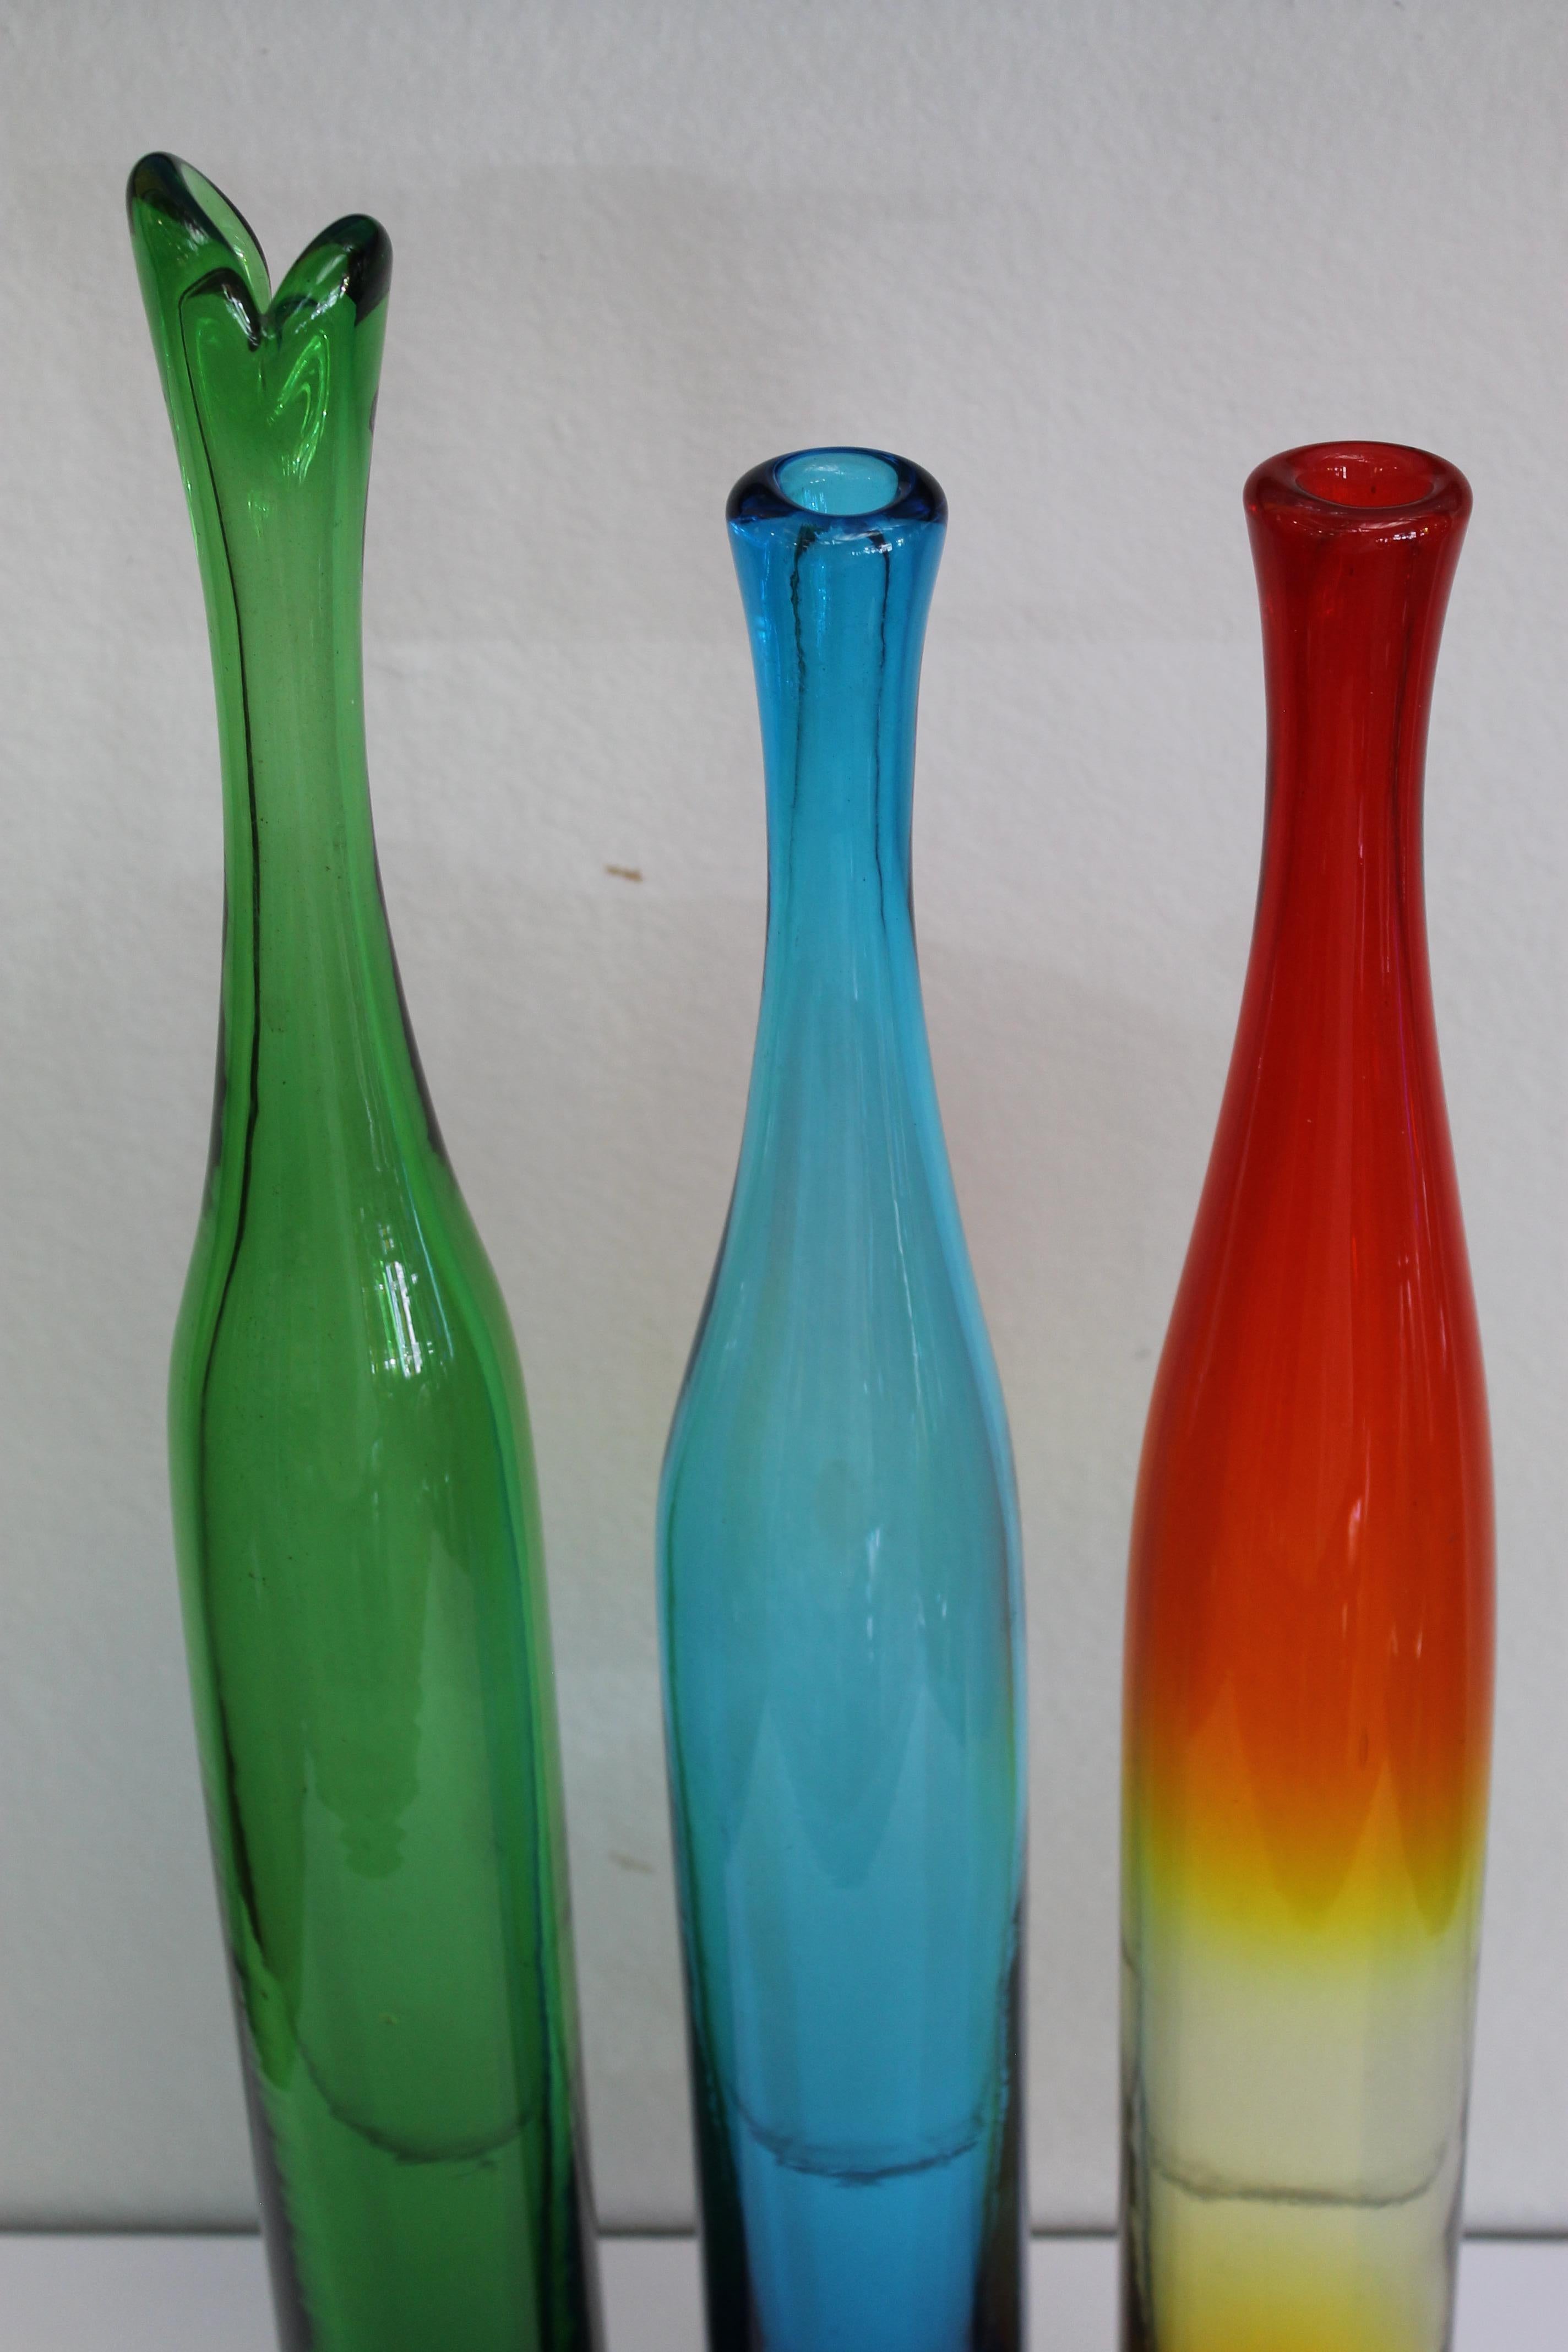 Drei Vasen aus farbigem Glas von Joel Myers, Modell Nr. 6427, 1960s. Hergestellt von Blenko. Die größte Vase ist 23,75